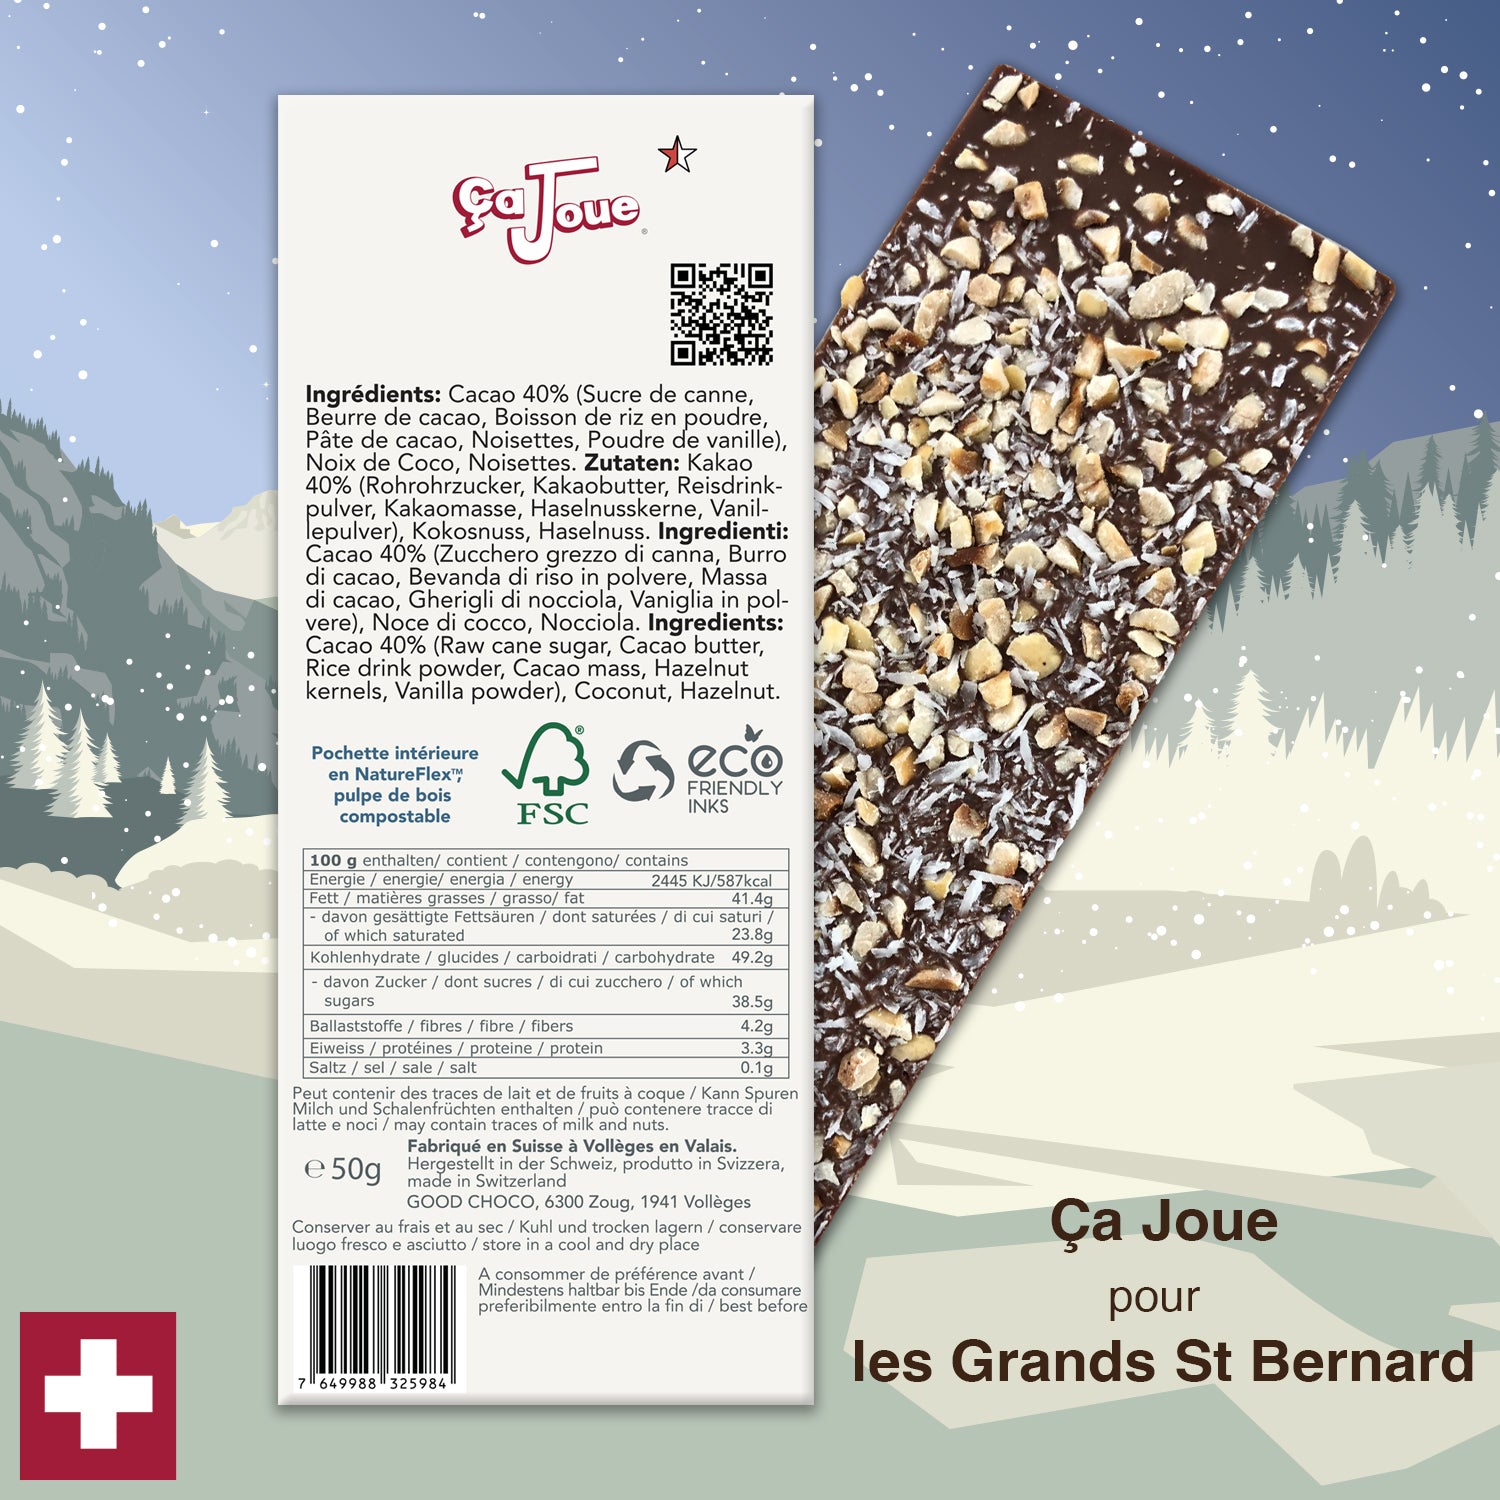 Ça Joue pour le St Bernard (Ref-BV3) Chocolat du Val de Bagnes